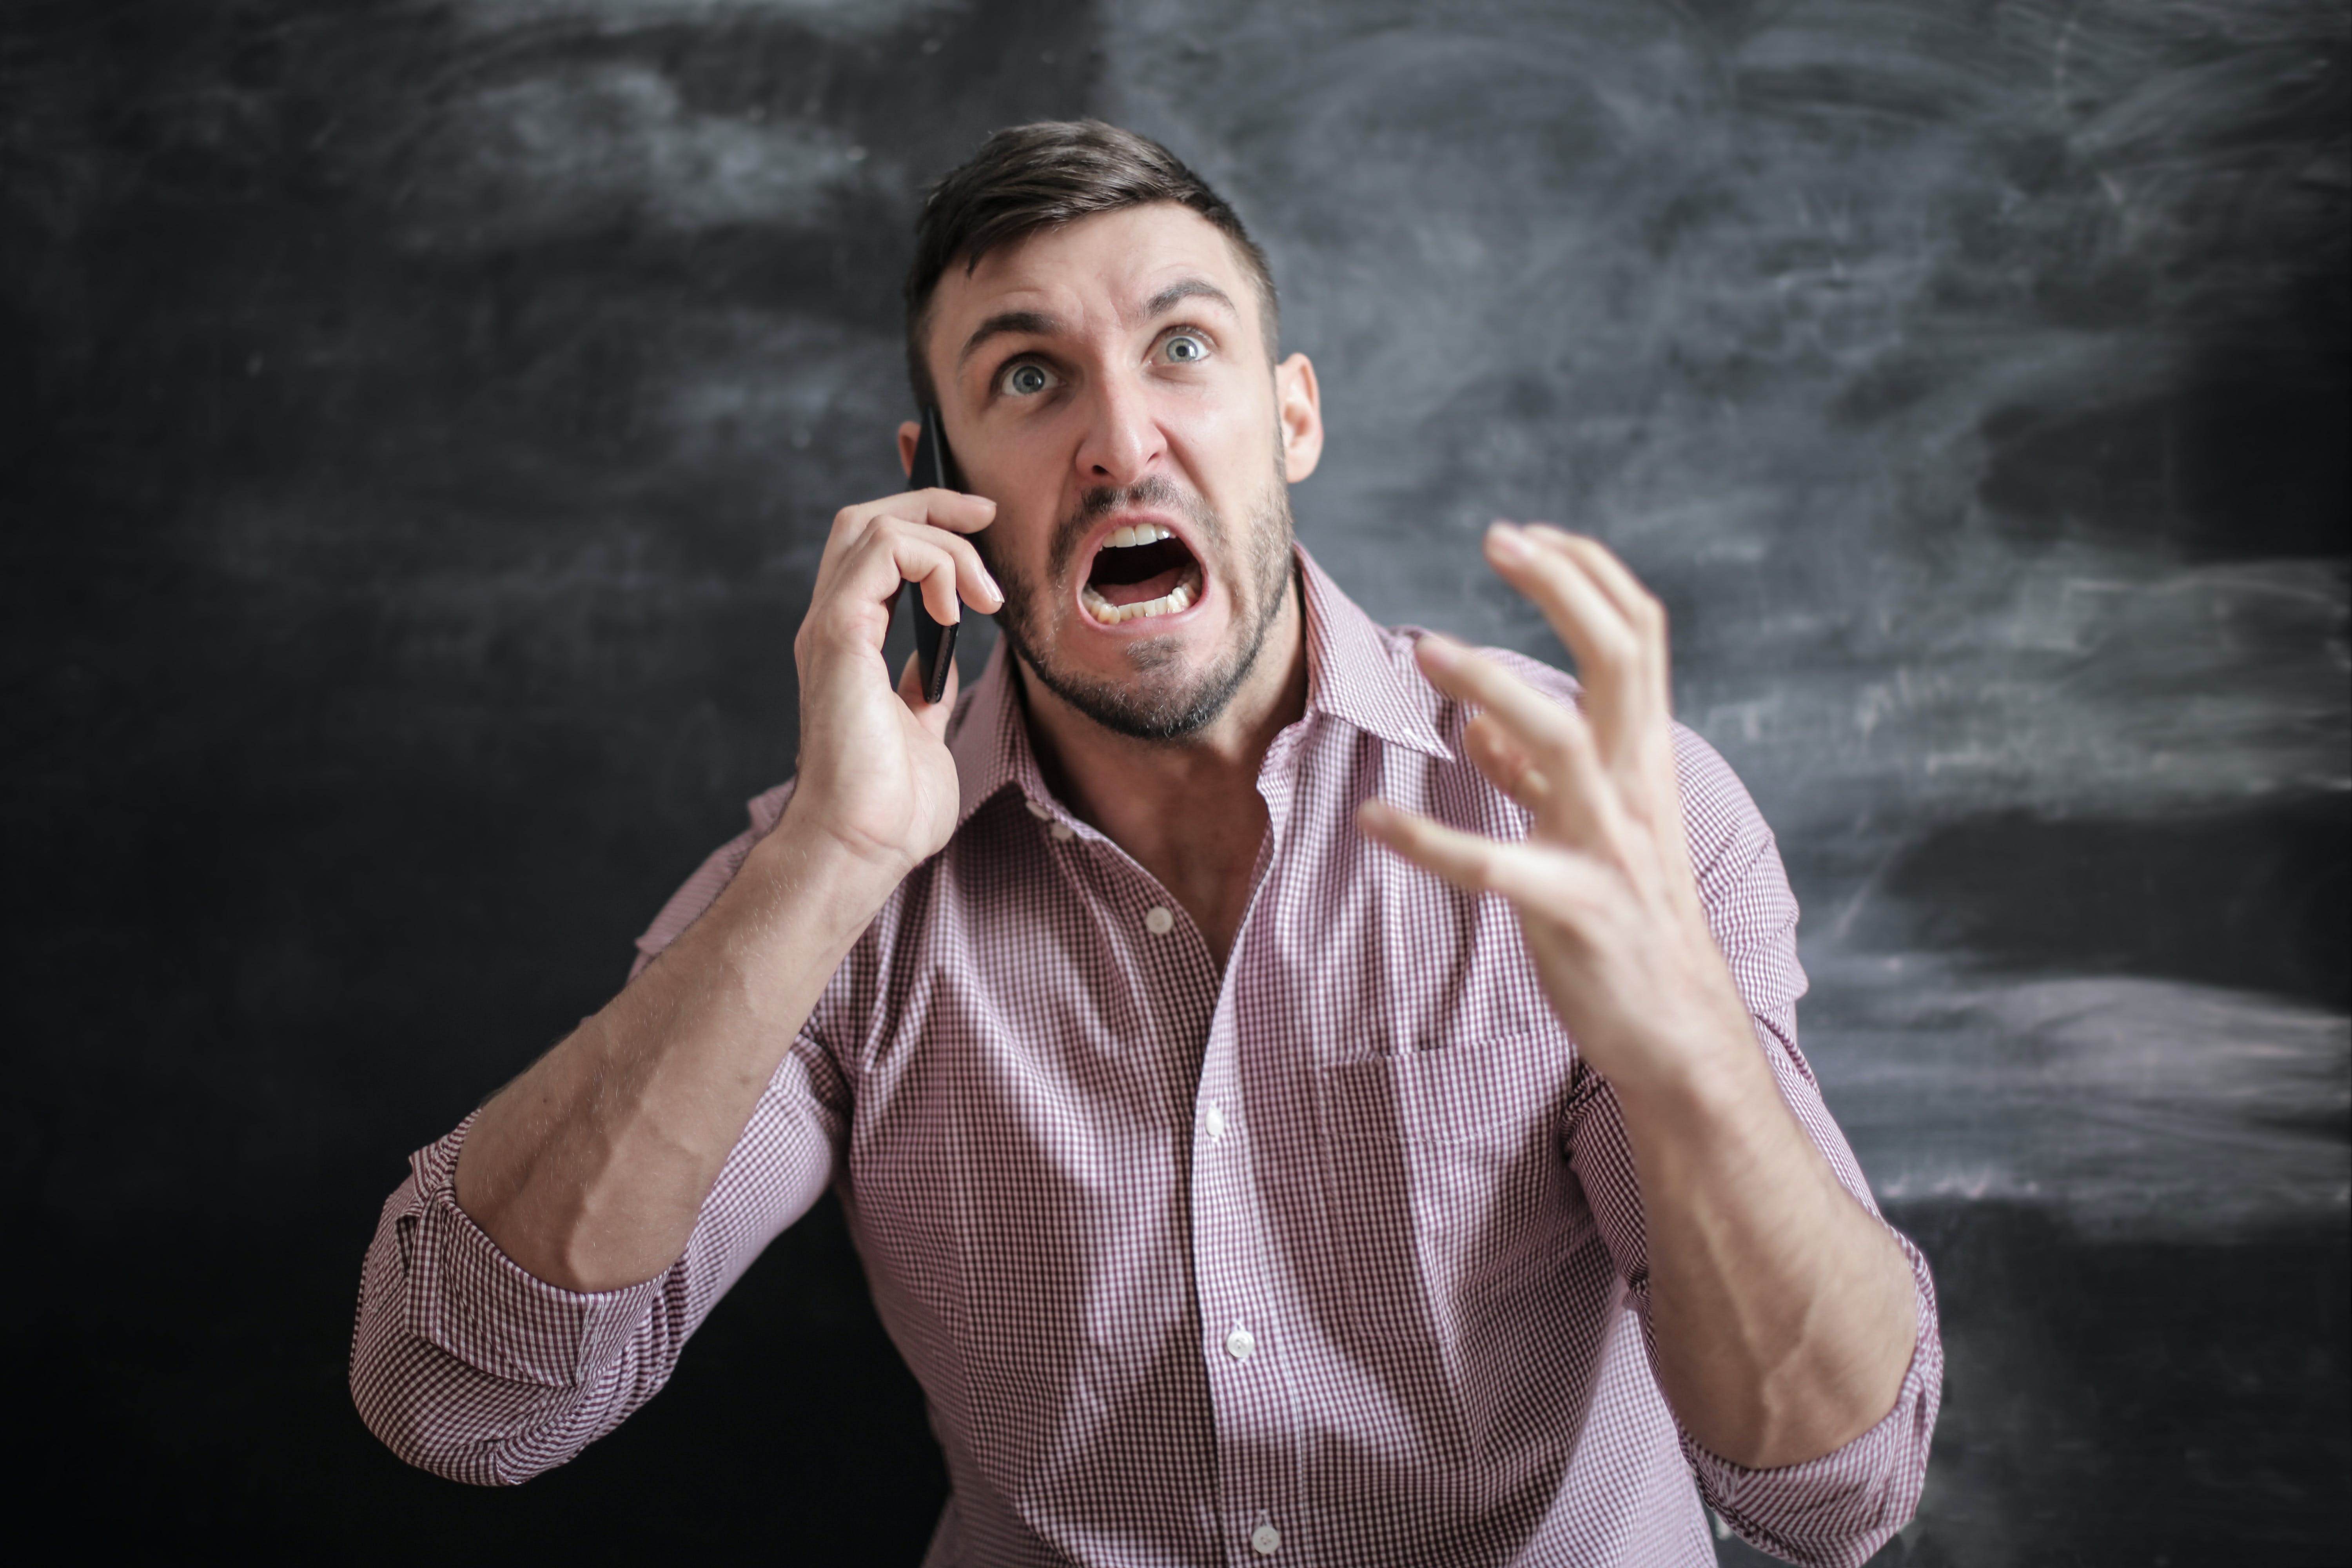 Un homme crie en faisant des gestes de colère pendant un appel téléphonique | Source : Pexels